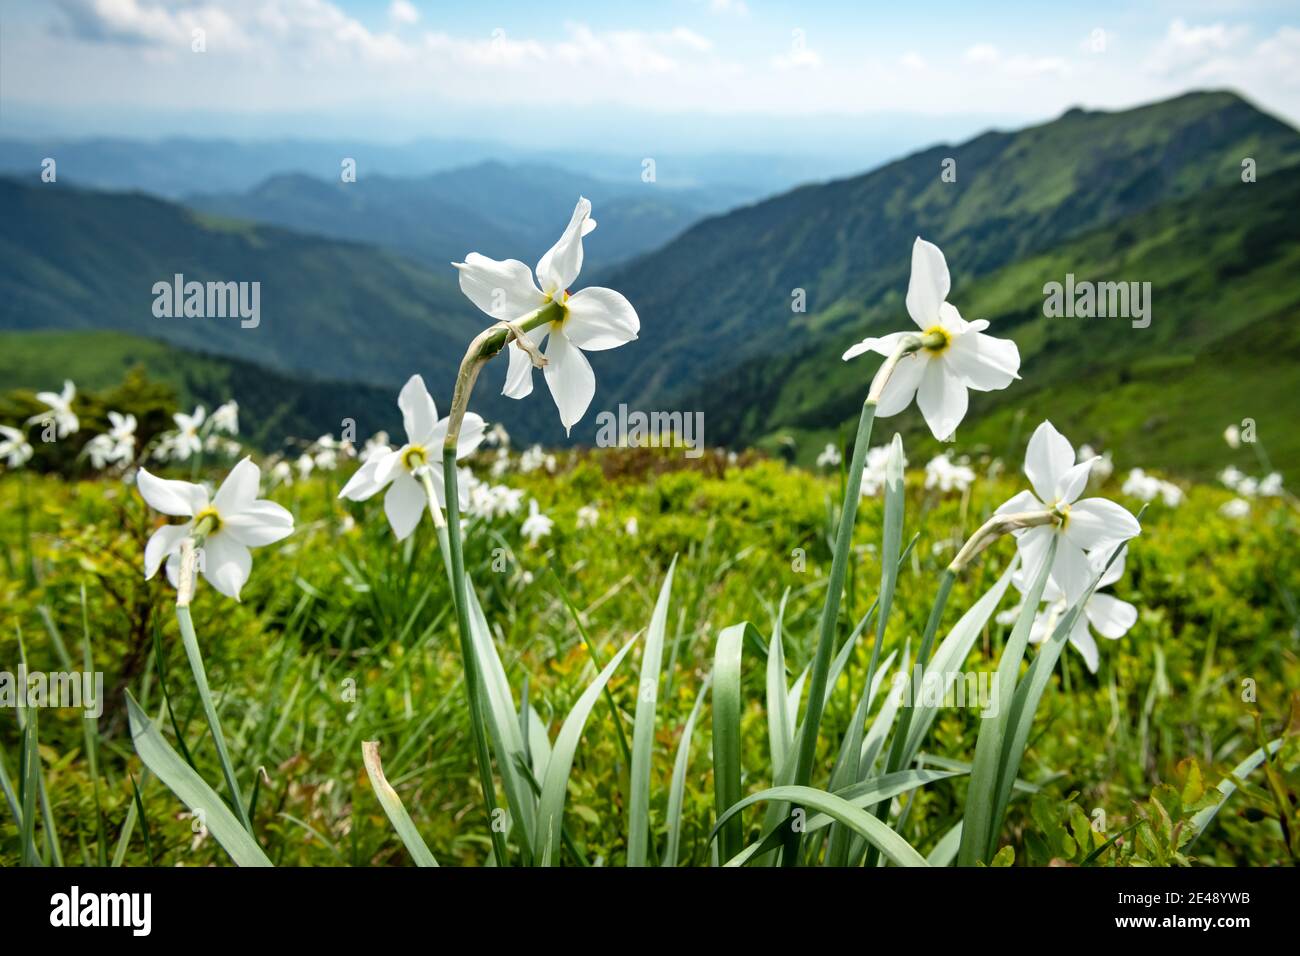 Bergwiese mit weißen Narzissen Blumen bedeckt. Karpaten, Europa. Landschaftsfotografie Stockfoto